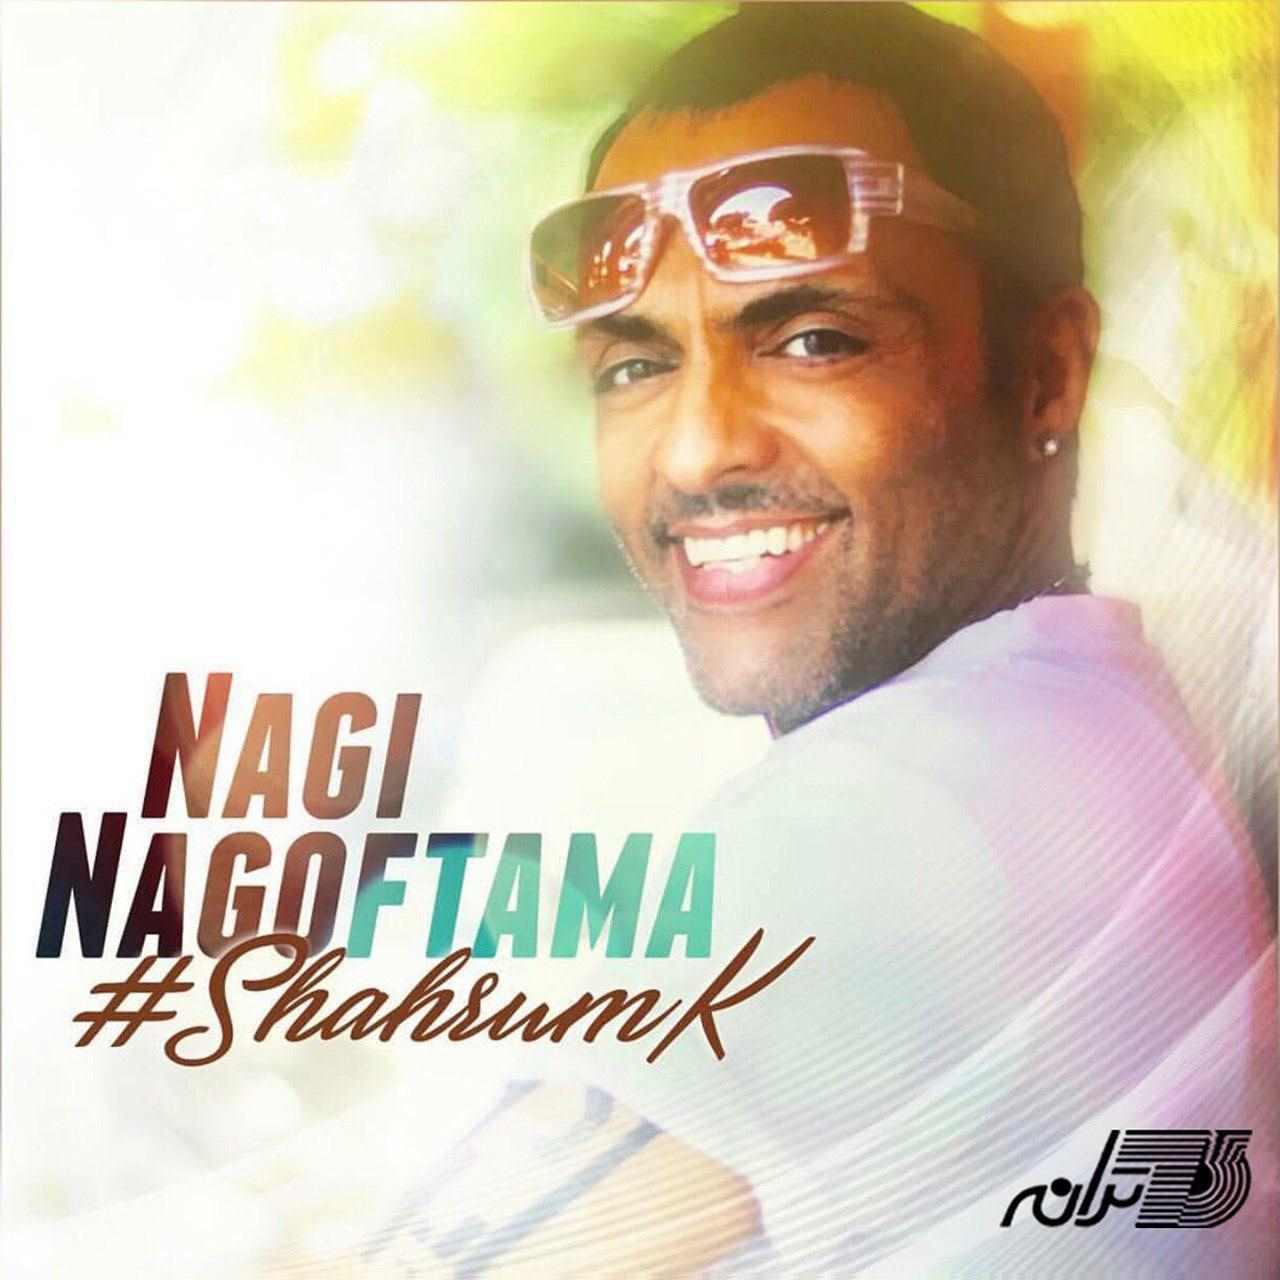  Shahrum K – Nagi Nagoftama